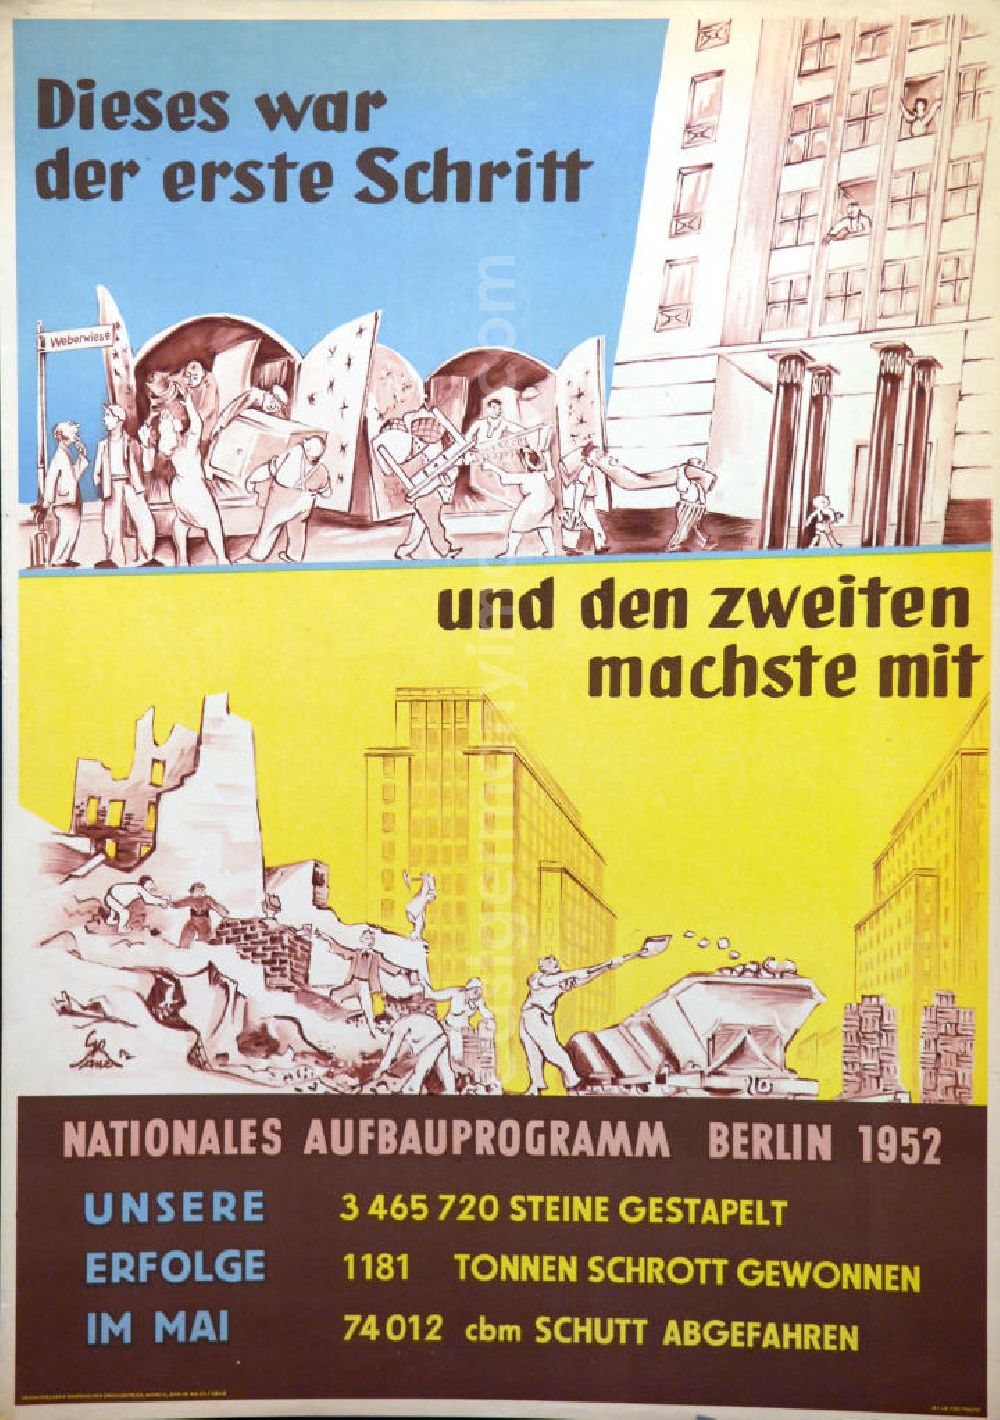 GDR picture archive: Berlin - Plakat von Herbert Sandberg Nationales Aufbauprogramm Berlin 1952 (Dieses war der erste Schritt und den zweiten machste mit) aus dem Jahr 1952, 59,5x84,